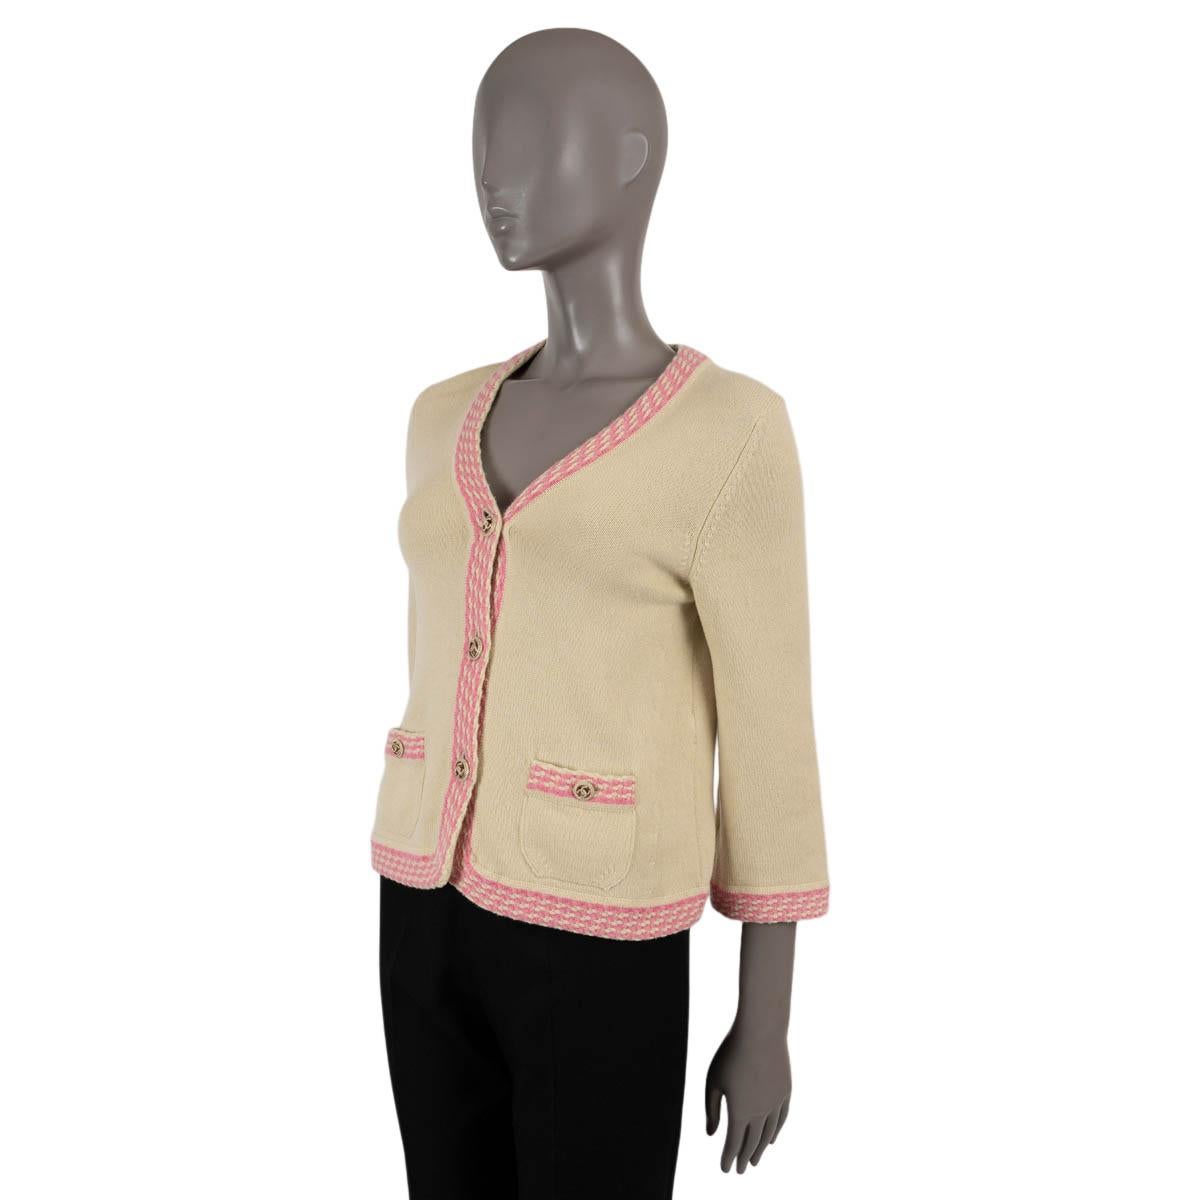 100% echte Chanel Strickjacke mit V-Ausschnitt aus pistaziengrünem Kaschmir (100%) mit rosa Kontrastbesatz. Das Design besteht aus pistaziengrünen und goldfarbenen CC-Logoknöpfen. Wurde getragen und ist in ausgezeichnetem Zustand. 

2011